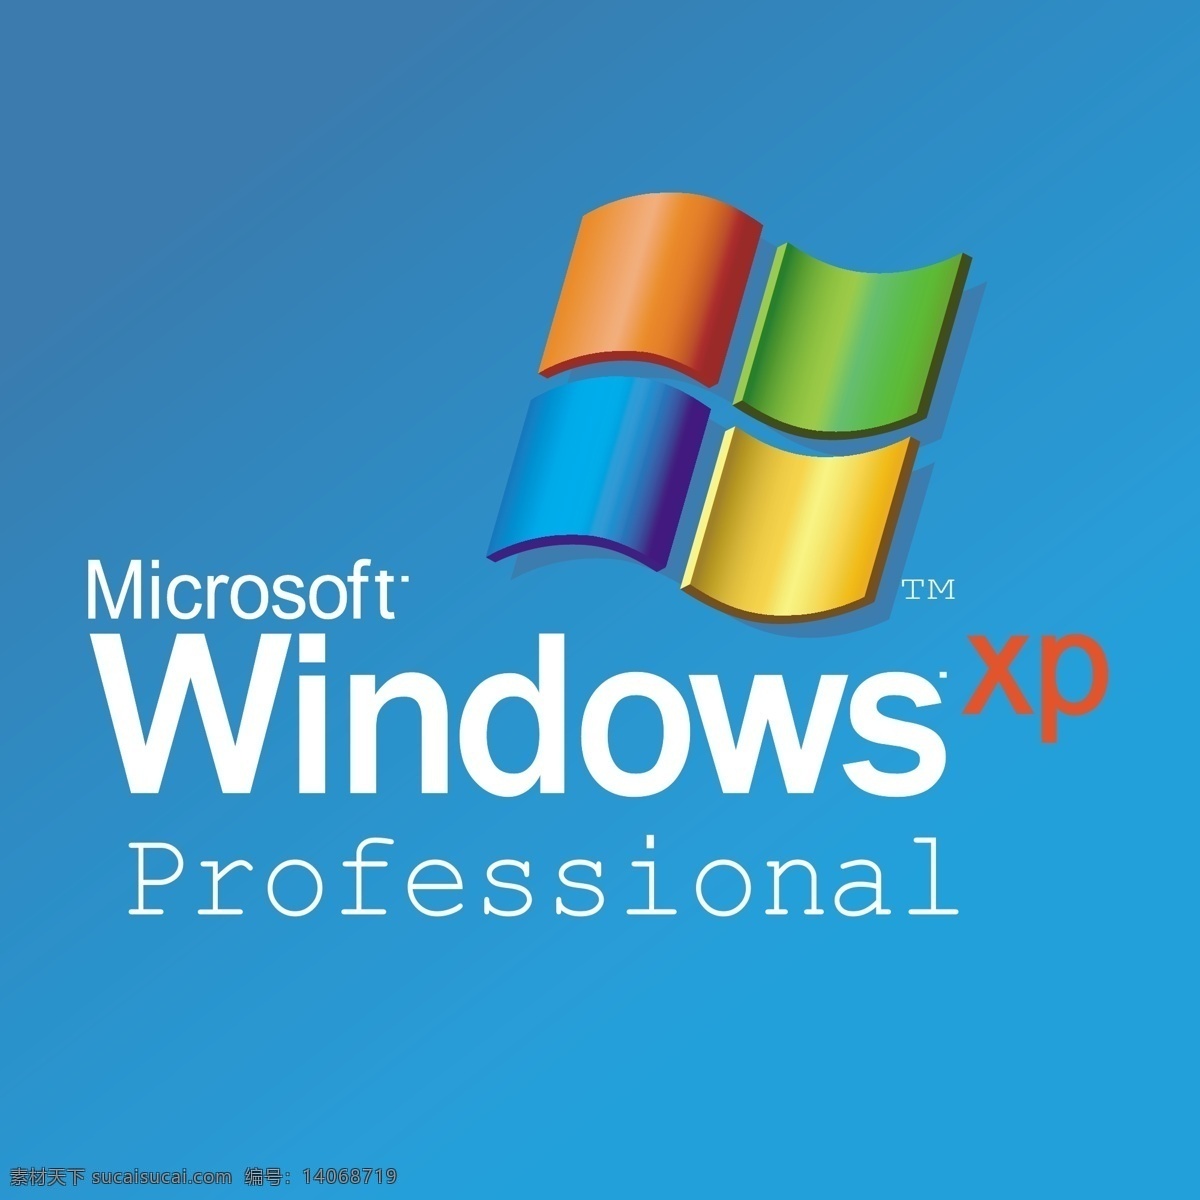 微软 windows xp 矢量图 其他矢量图